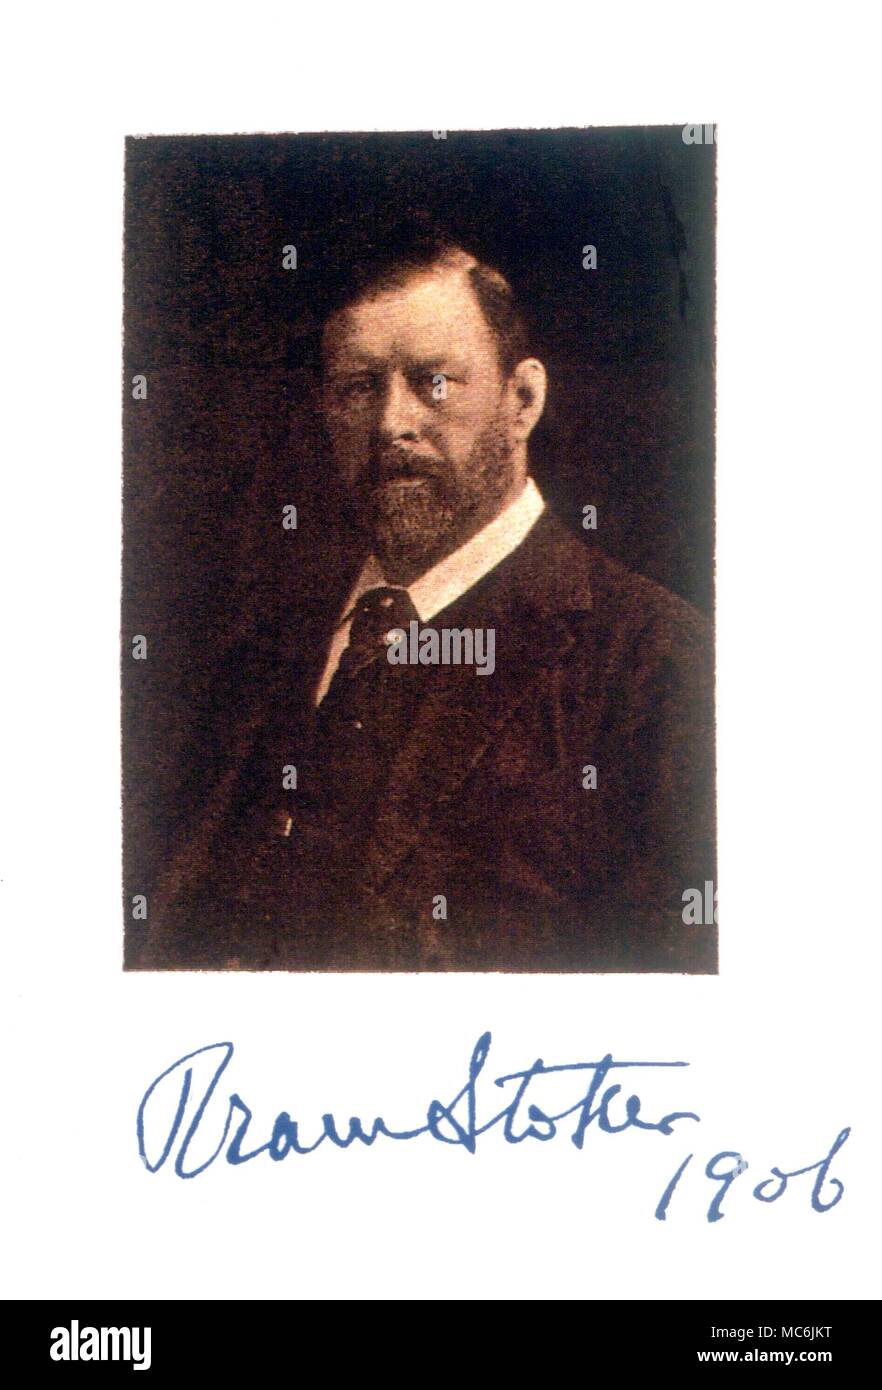 DRACULA - Bram Stoker. Stampa ritratto di Bram Stoker, con la propria firma (1906). Stoker (1847-1912) che ha scritto il romanzo Dracula Foto Stock